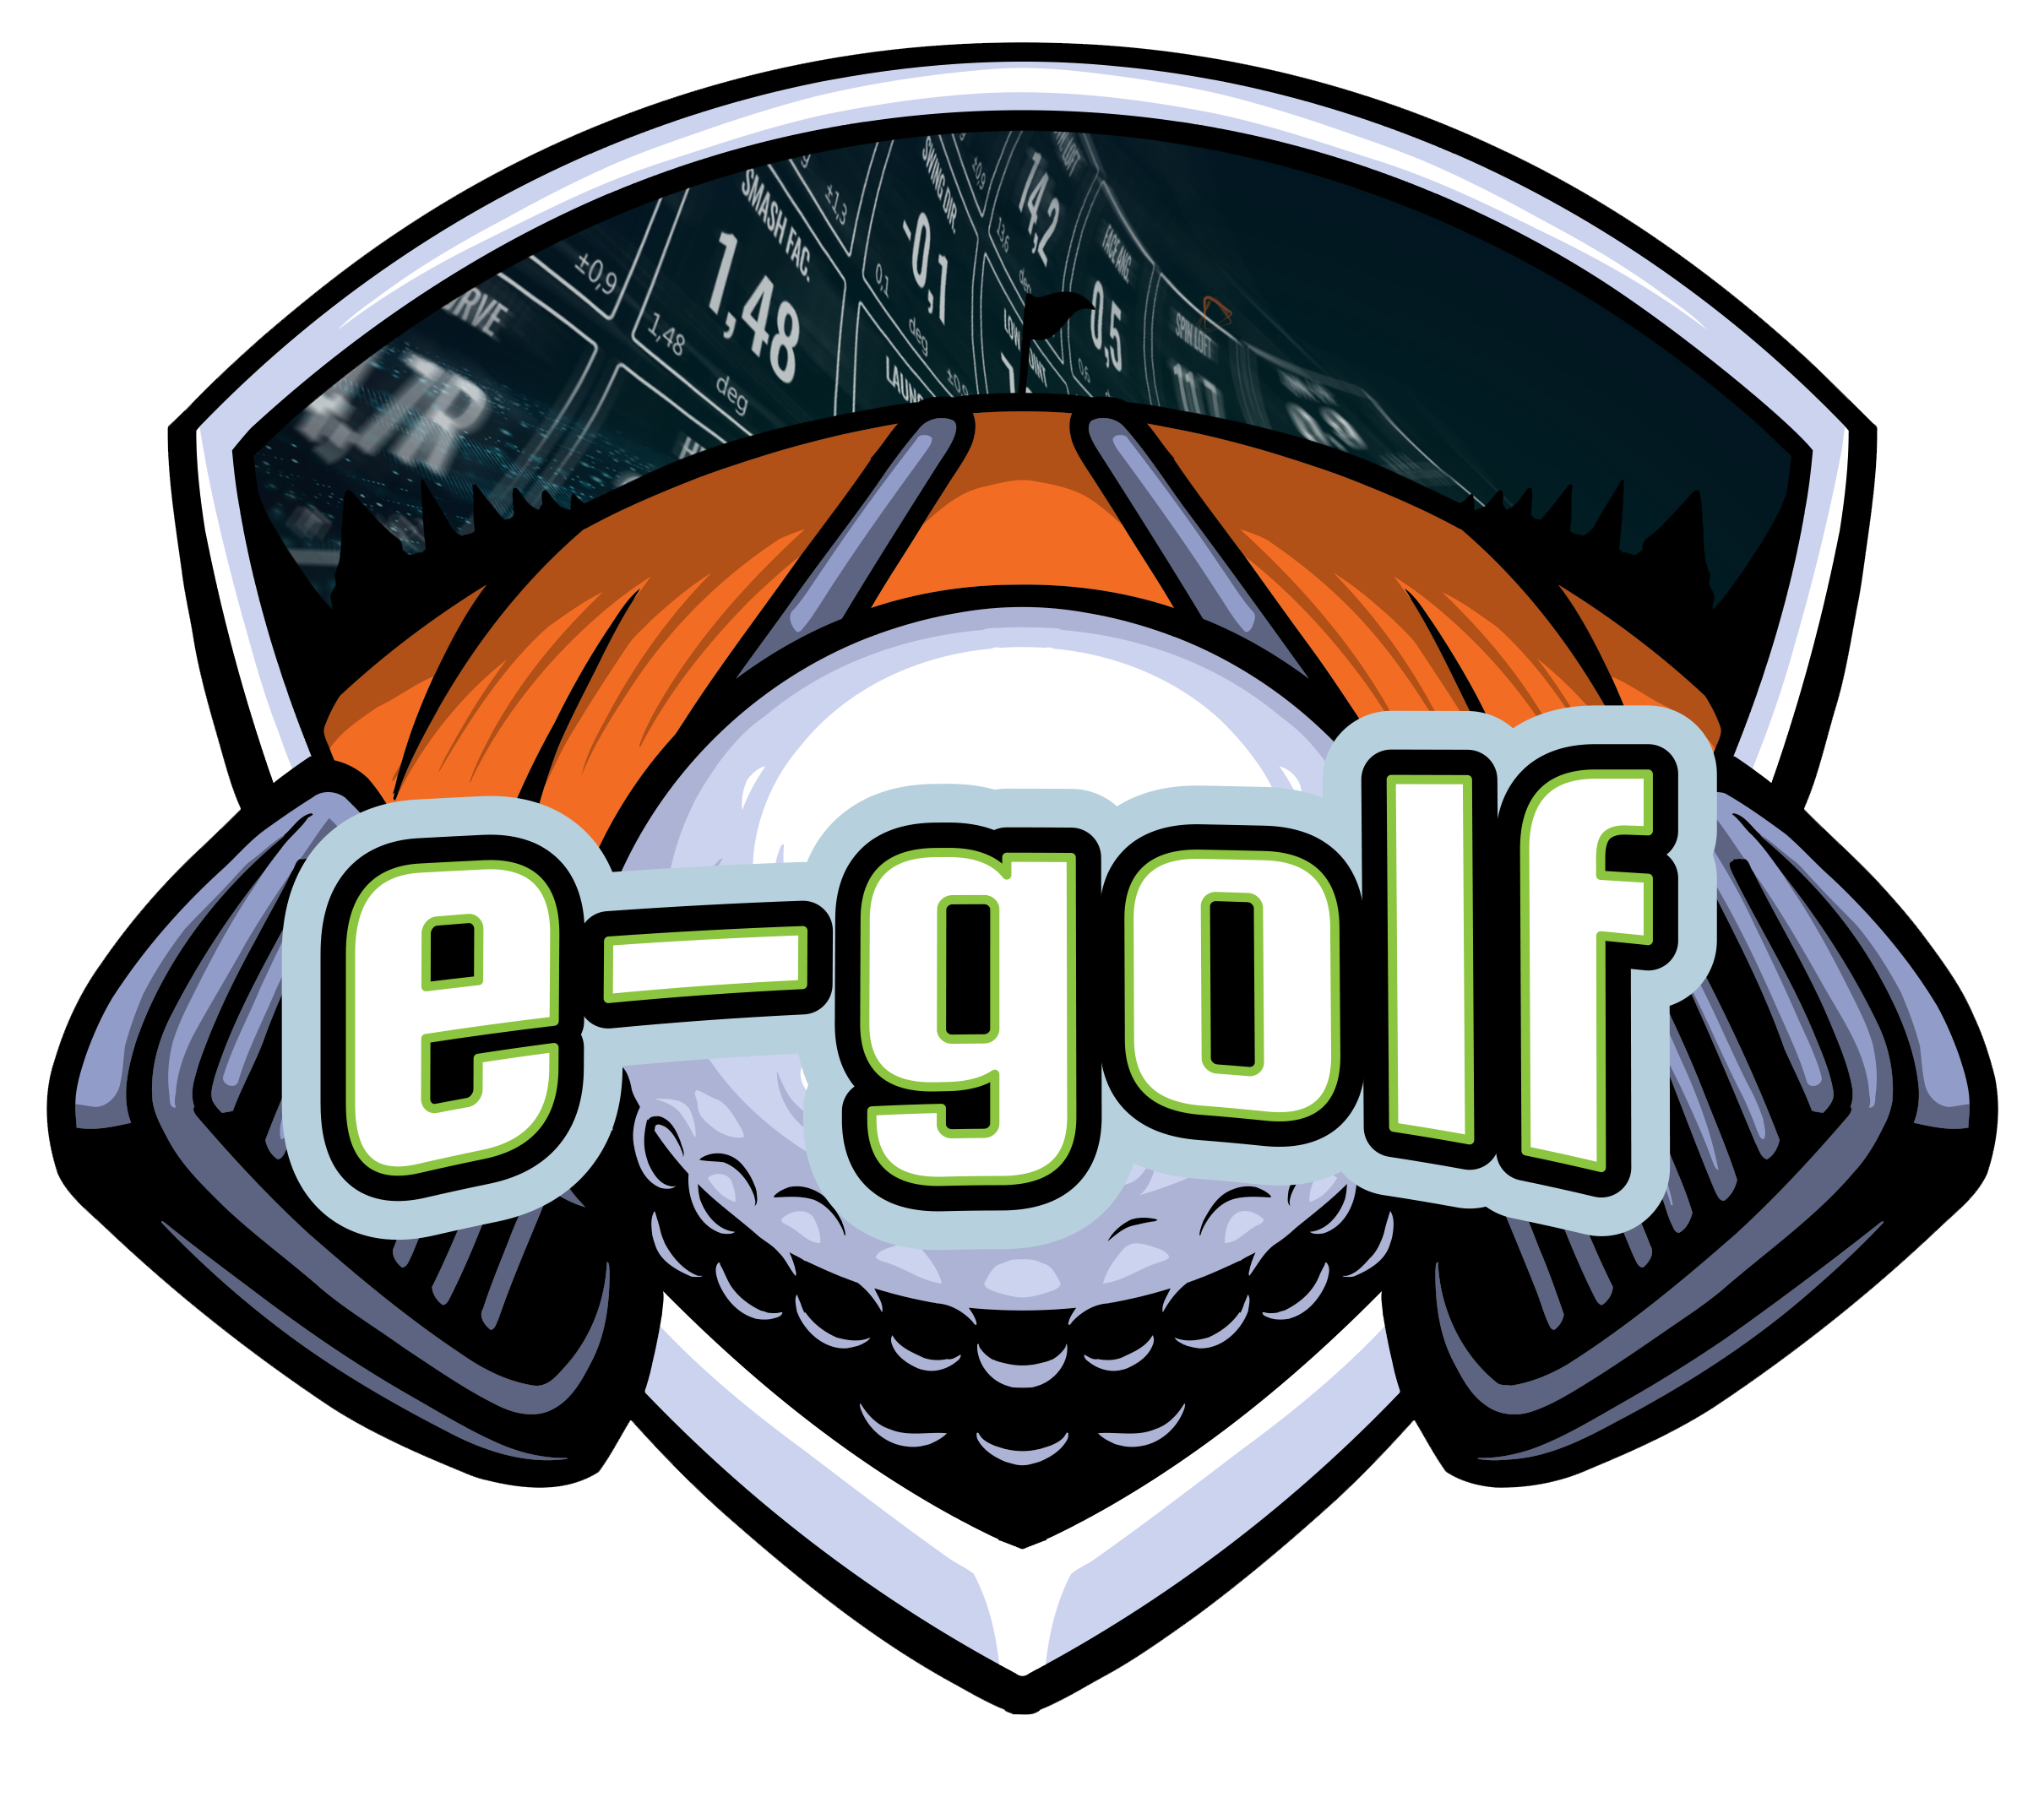 e-golf